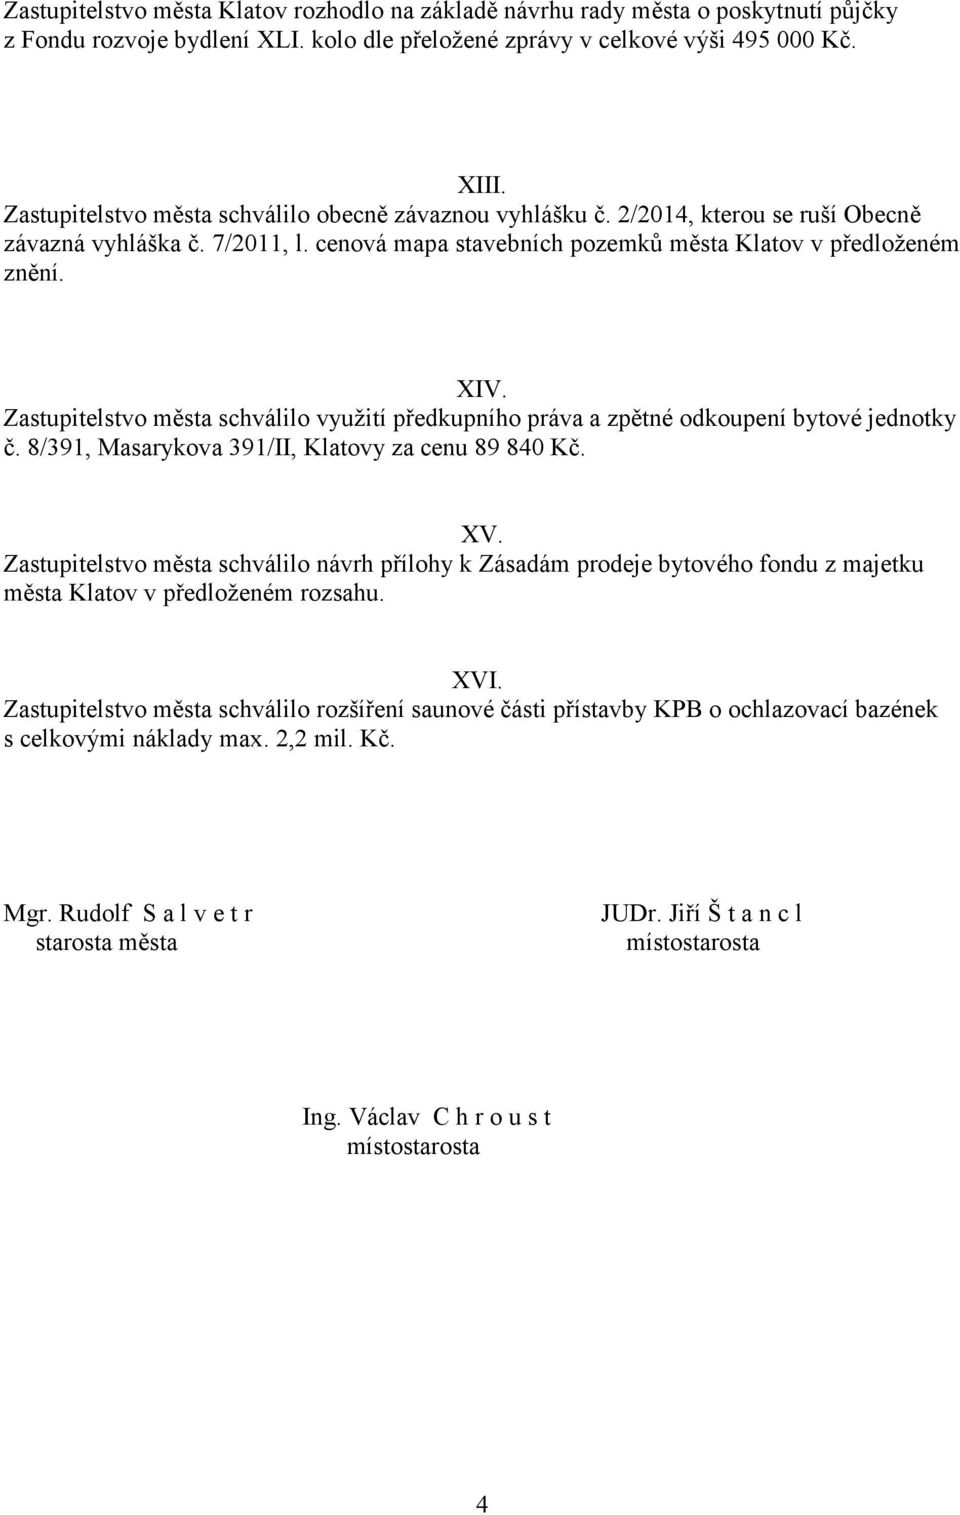 Zastupitelstvo města schválilo využití předkupního práva a zpětné odkoupení bytové jednotky č. 8/391, Masarykova 391/II, Klatovy za cenu 89 840 Kč. XV.